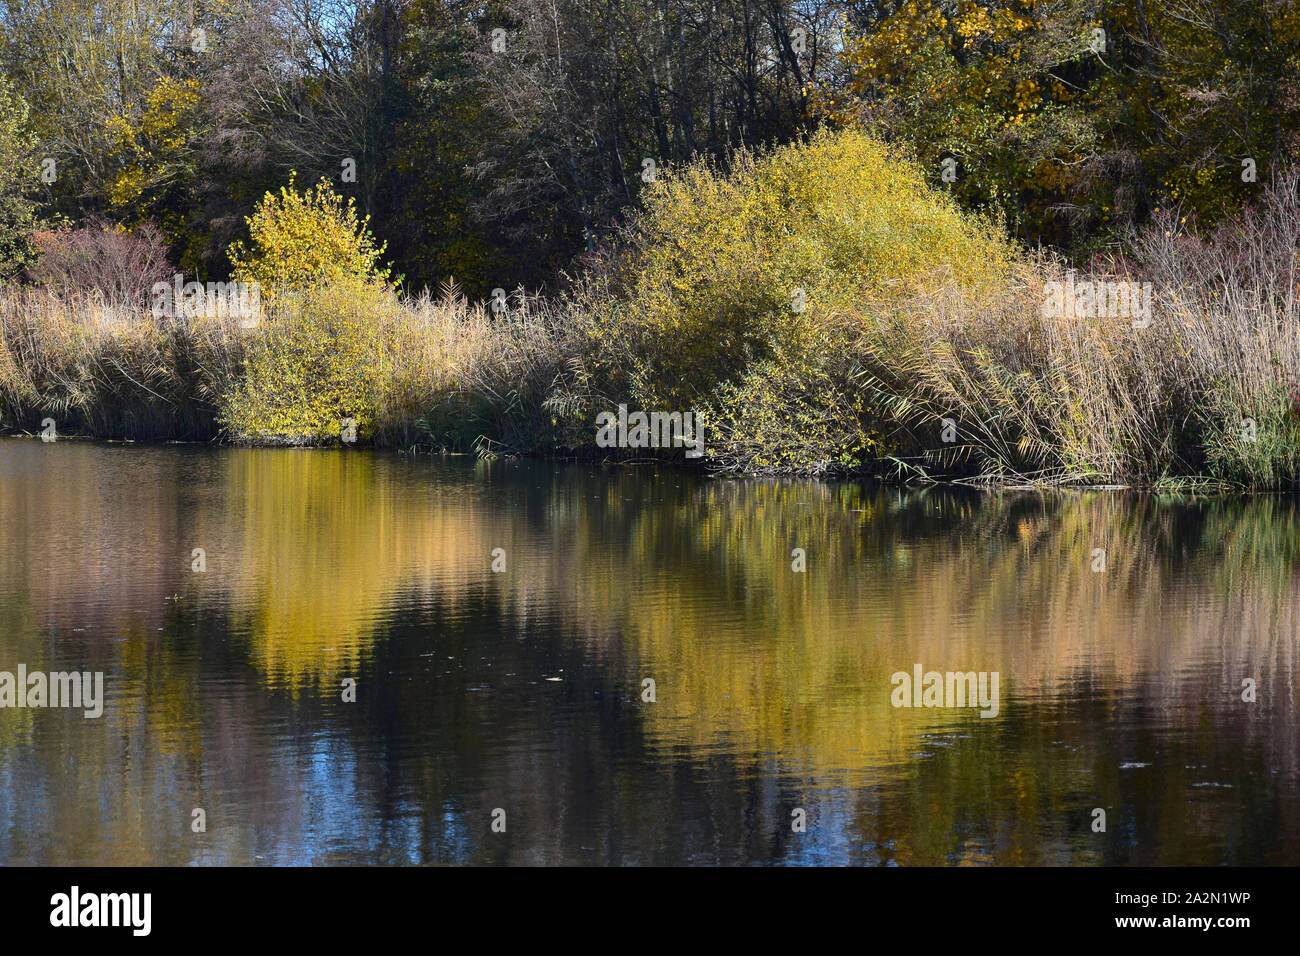 Herbst Landschaft mit einem See, Bäume und Büsche und Gelb ein Spiegelbild im Wasser. Oberhausen-Rheinhausen, Baden-Württemberg, Deutschland. Stockfoto